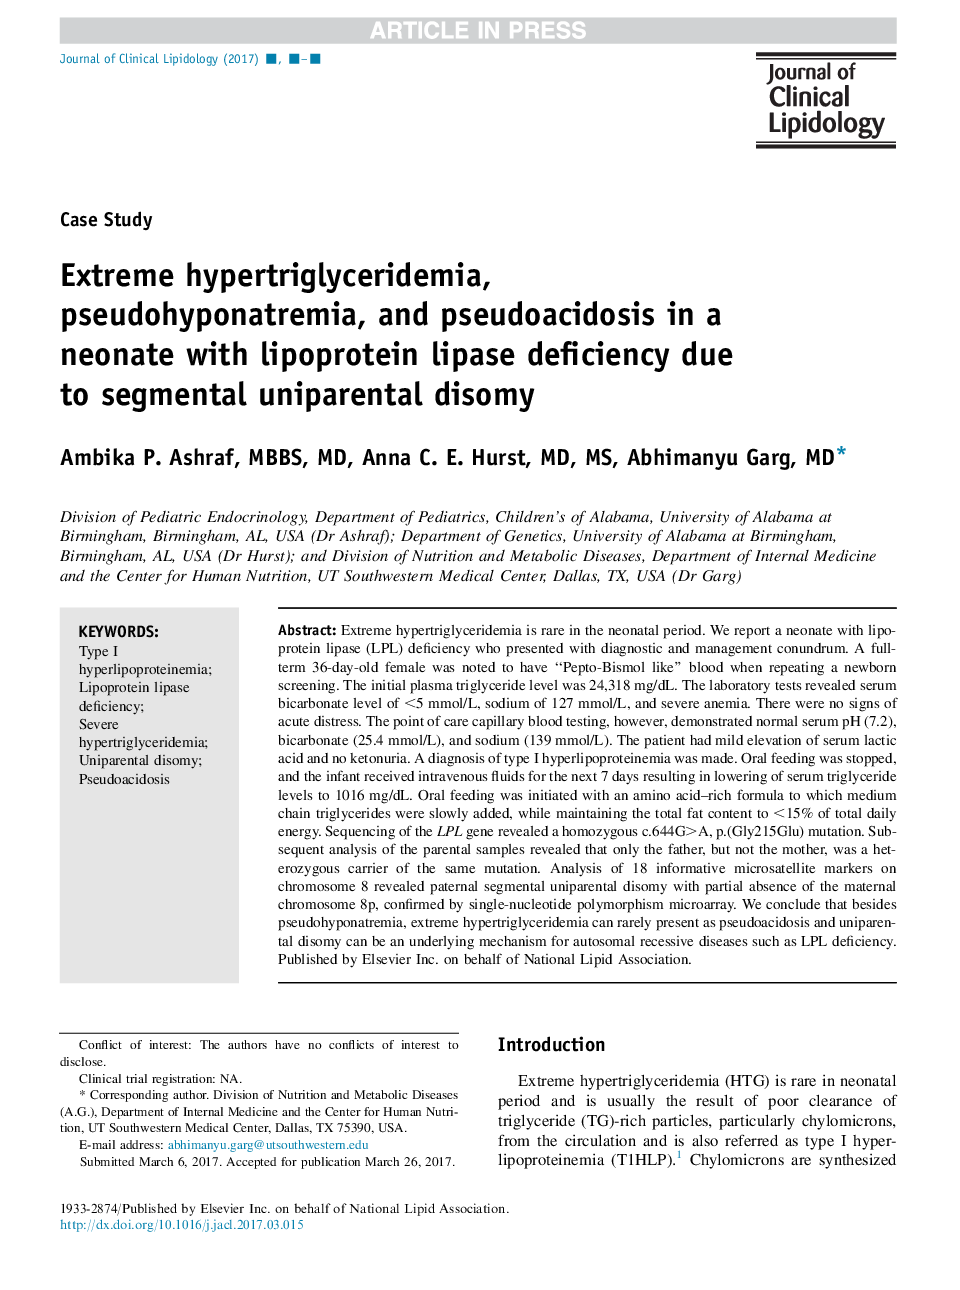 هیپرتروگلیسریدمی شدید، پوسیدگیپناترمی و پوسیدو آیدیدوز در نوزاد مبتلا به کمبود لیپوپروتئین لیپاز با توجه به اختلال دوقطبی 